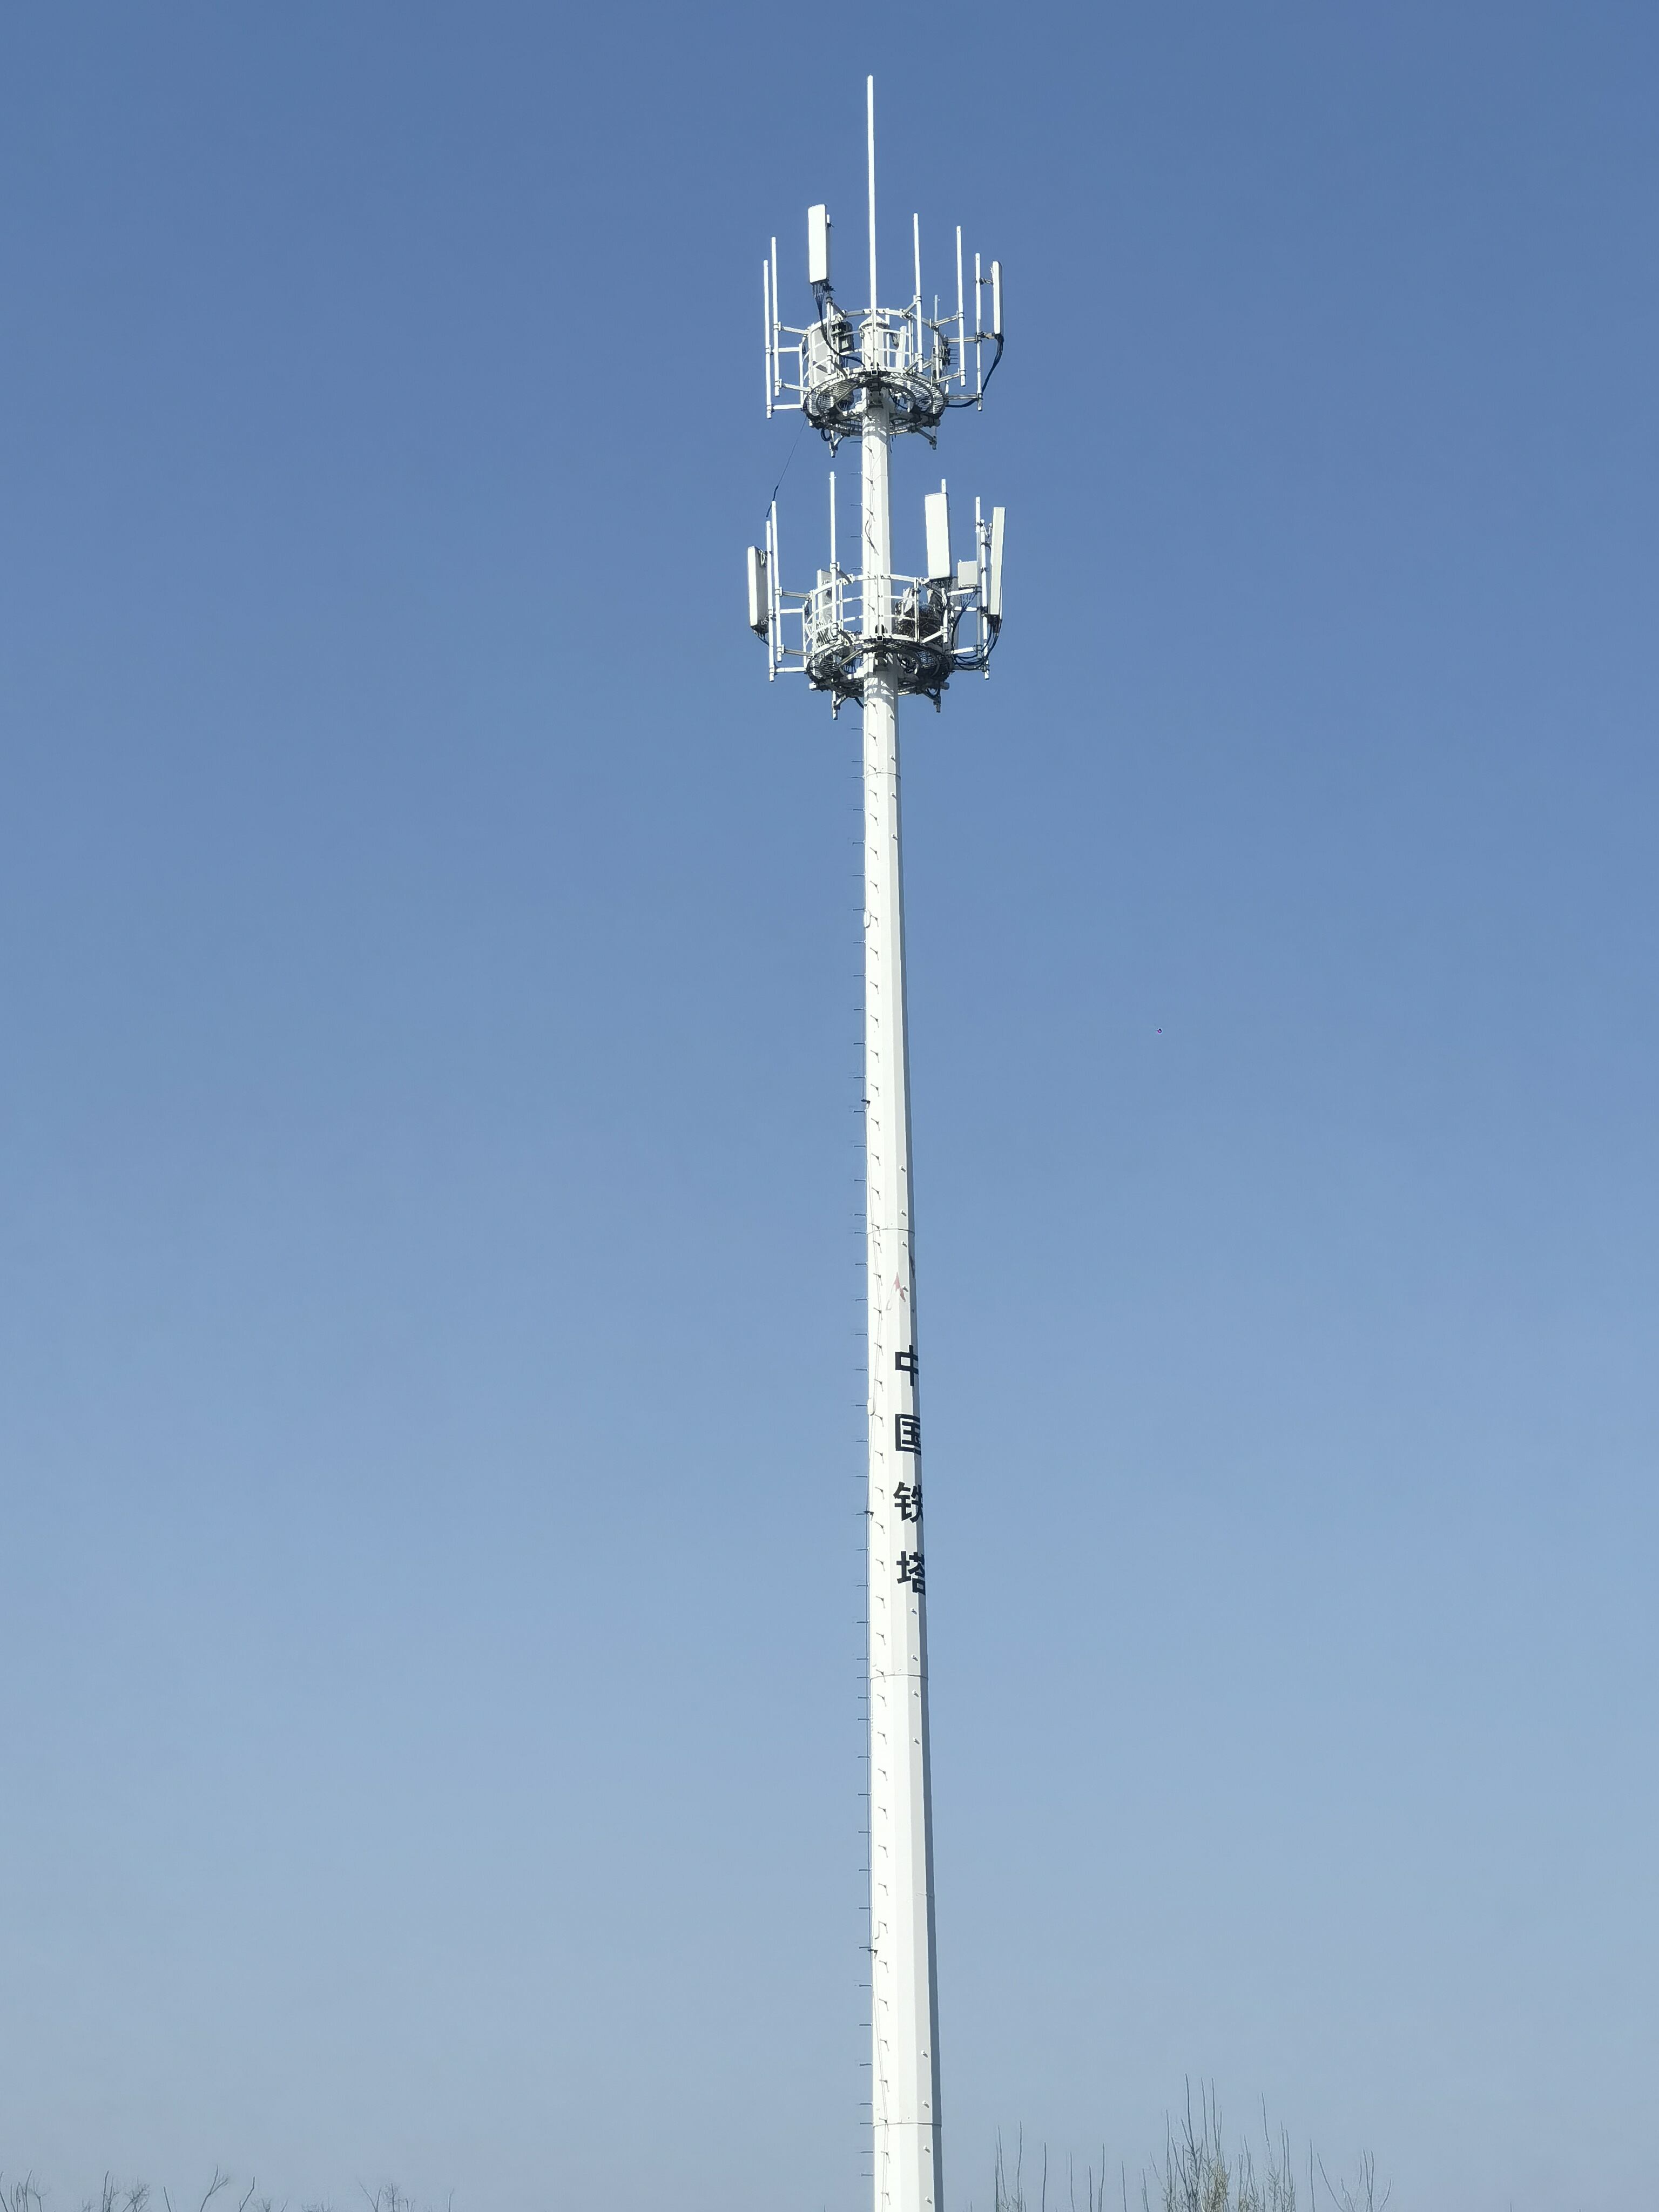 Monopole Tower Antenna Aloqa uzatish ishlab chiqarish